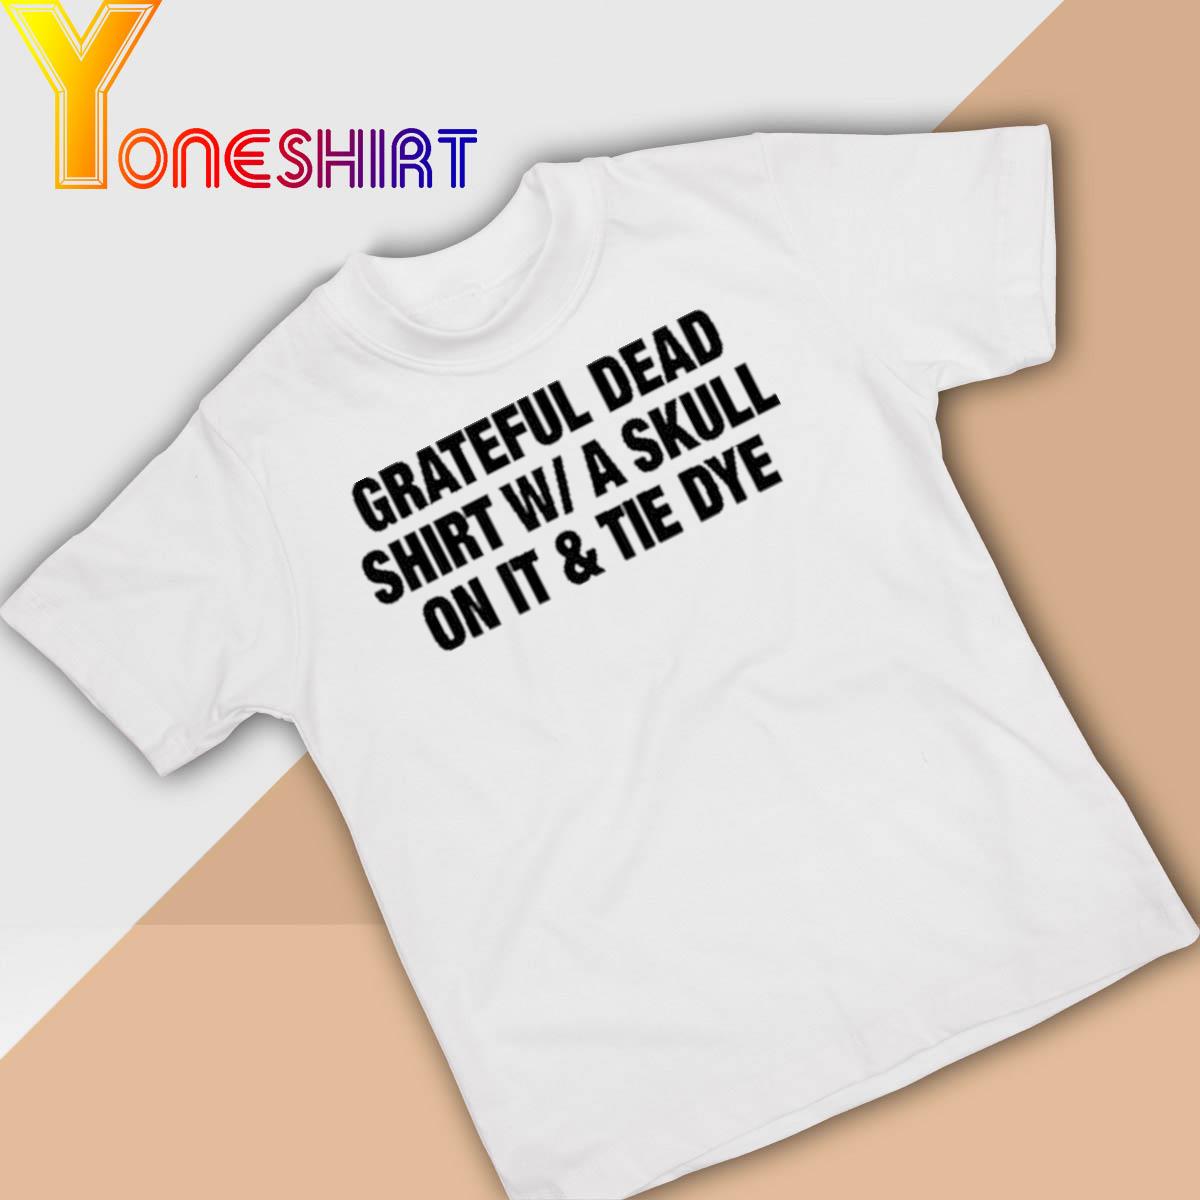 Grateful Dead Shirt W A Skull On It & Tie Dye Shirt